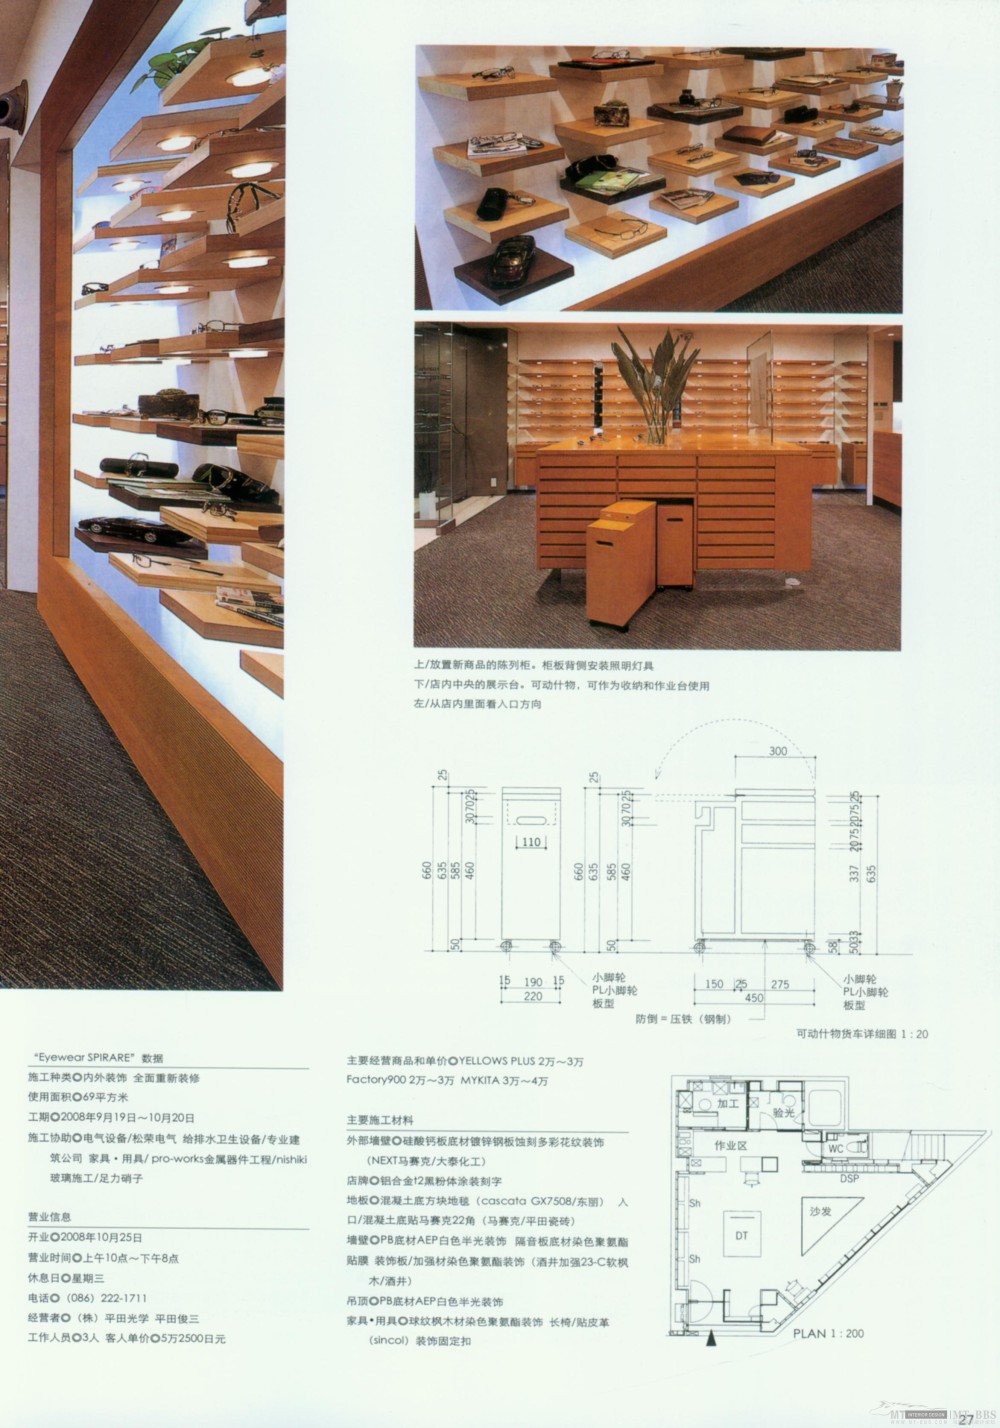 2010亚太商店设计年鉴 A部分2_Zqc025.jpg